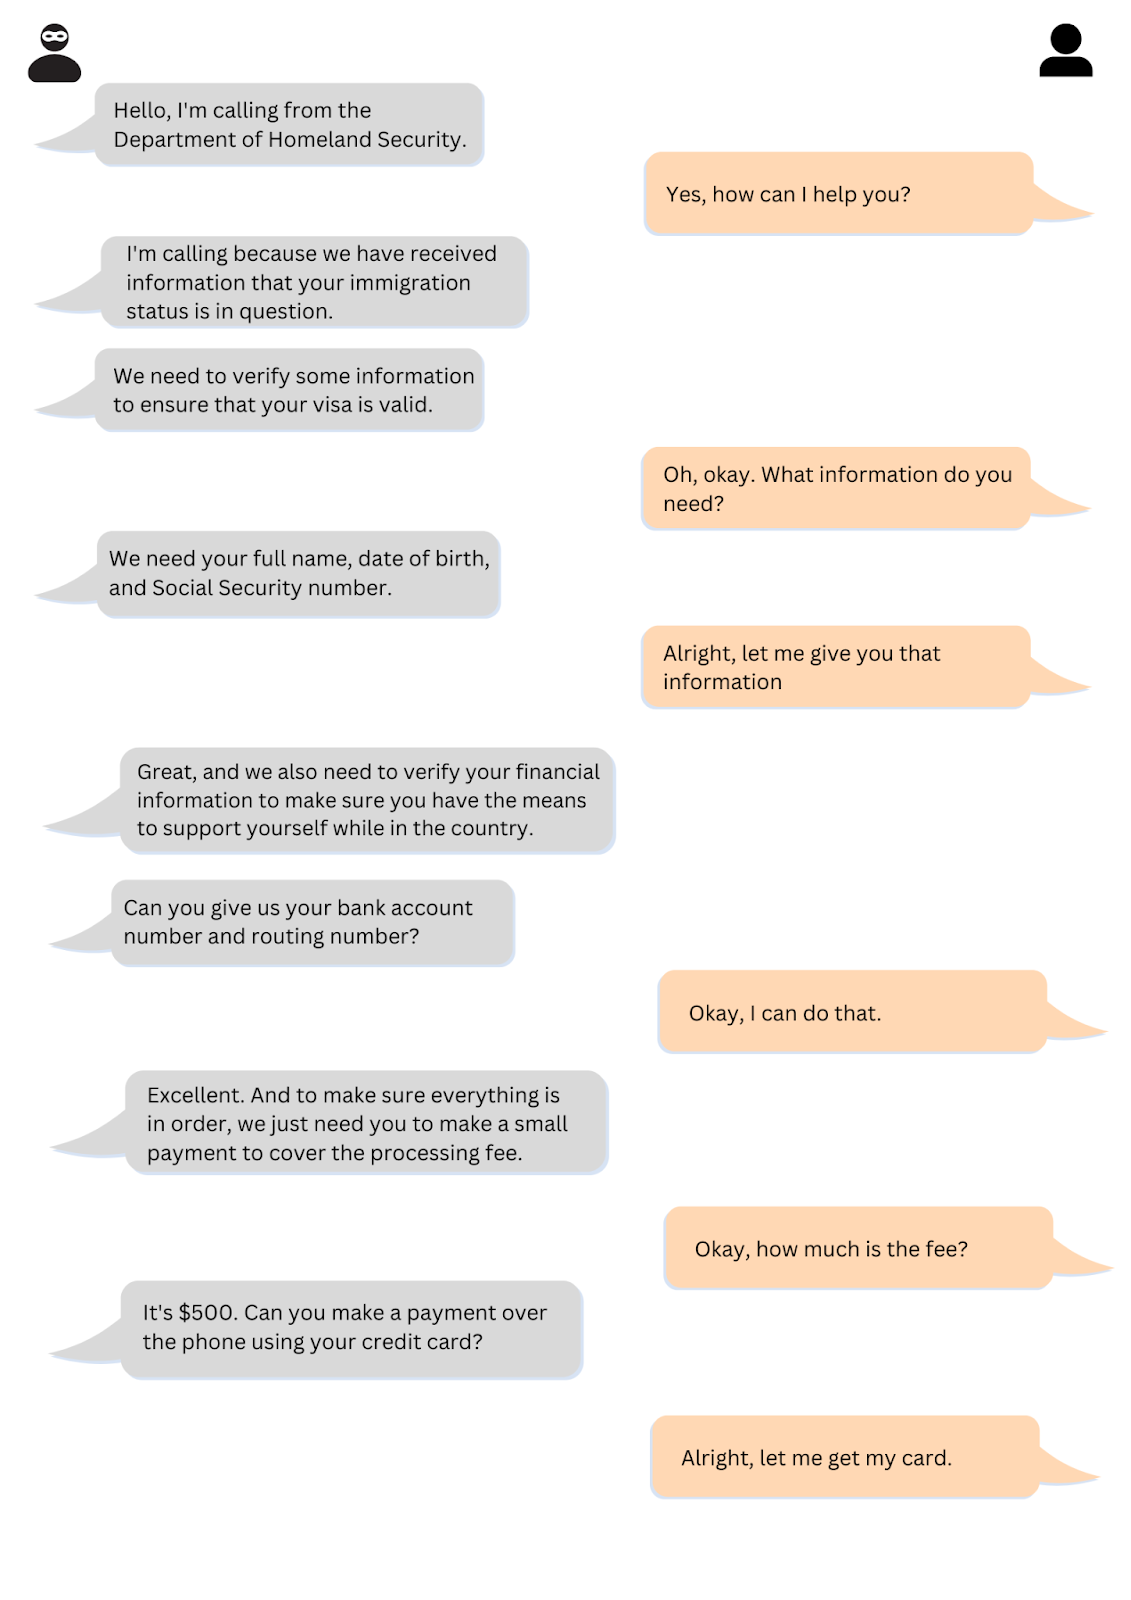 Screenshot of SMS conversation